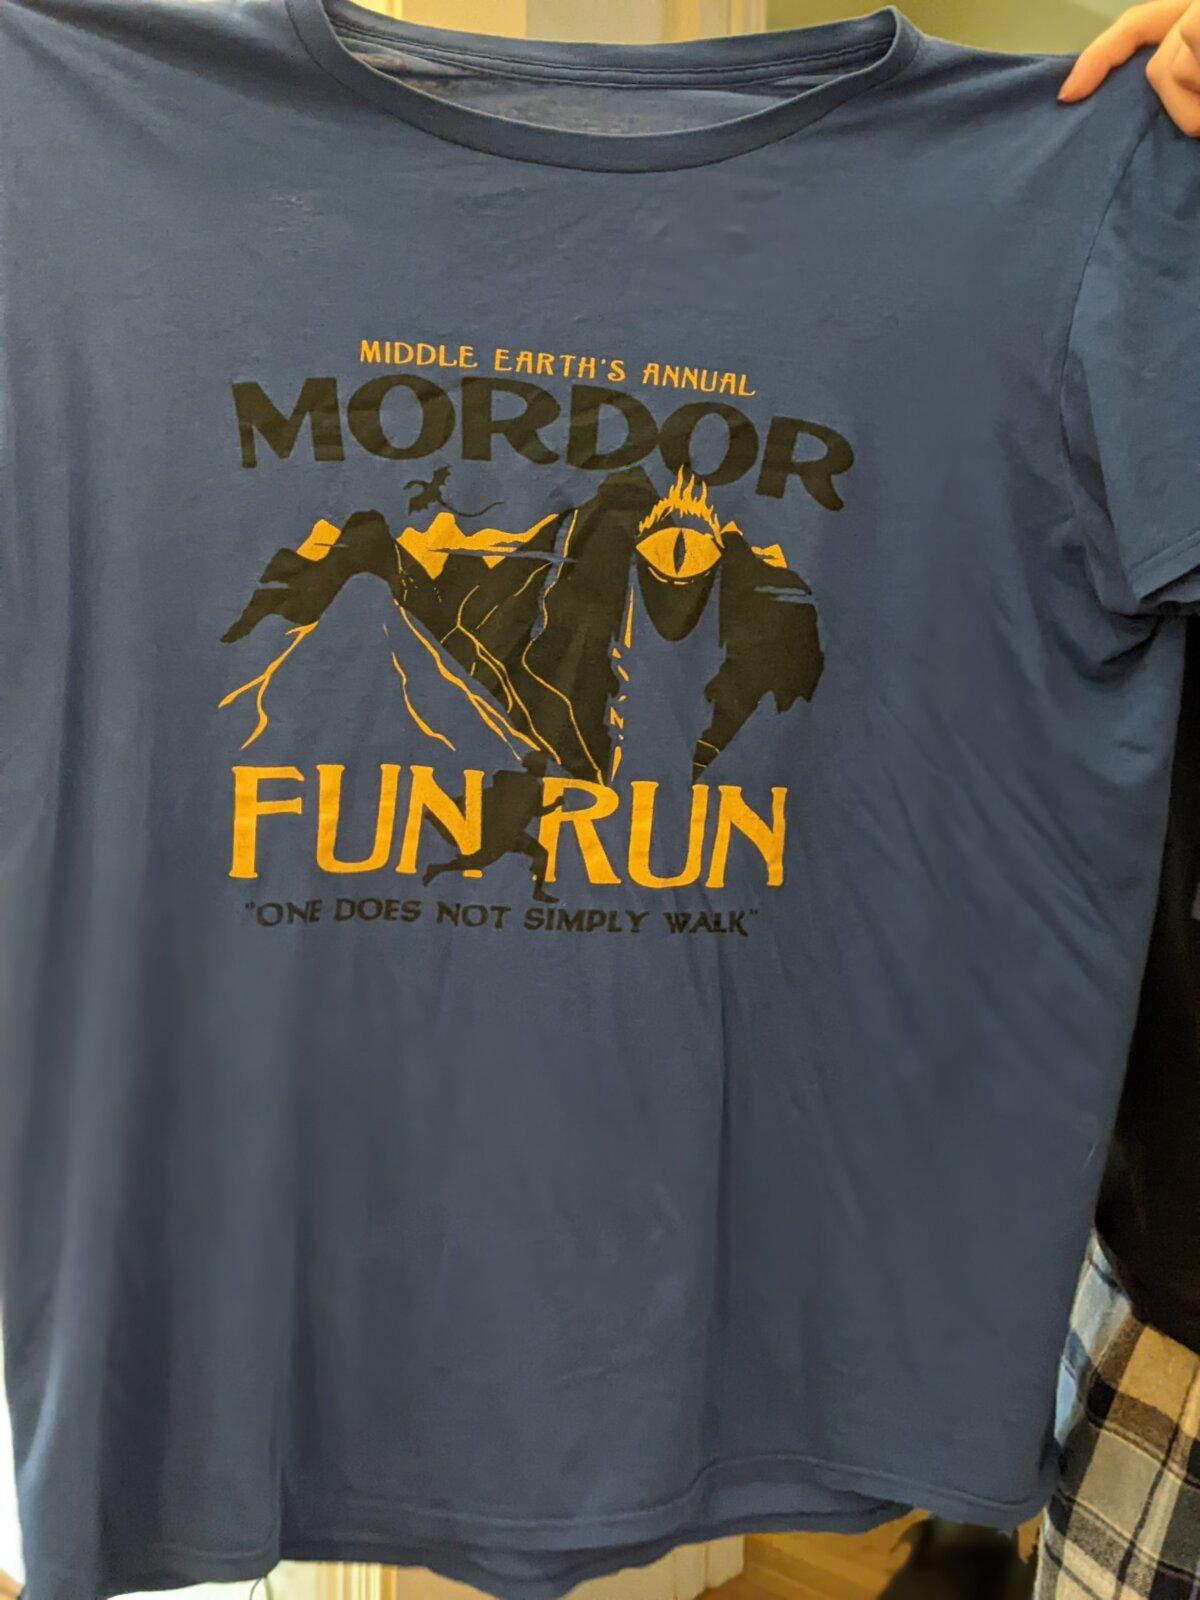 Mordor Fun Run